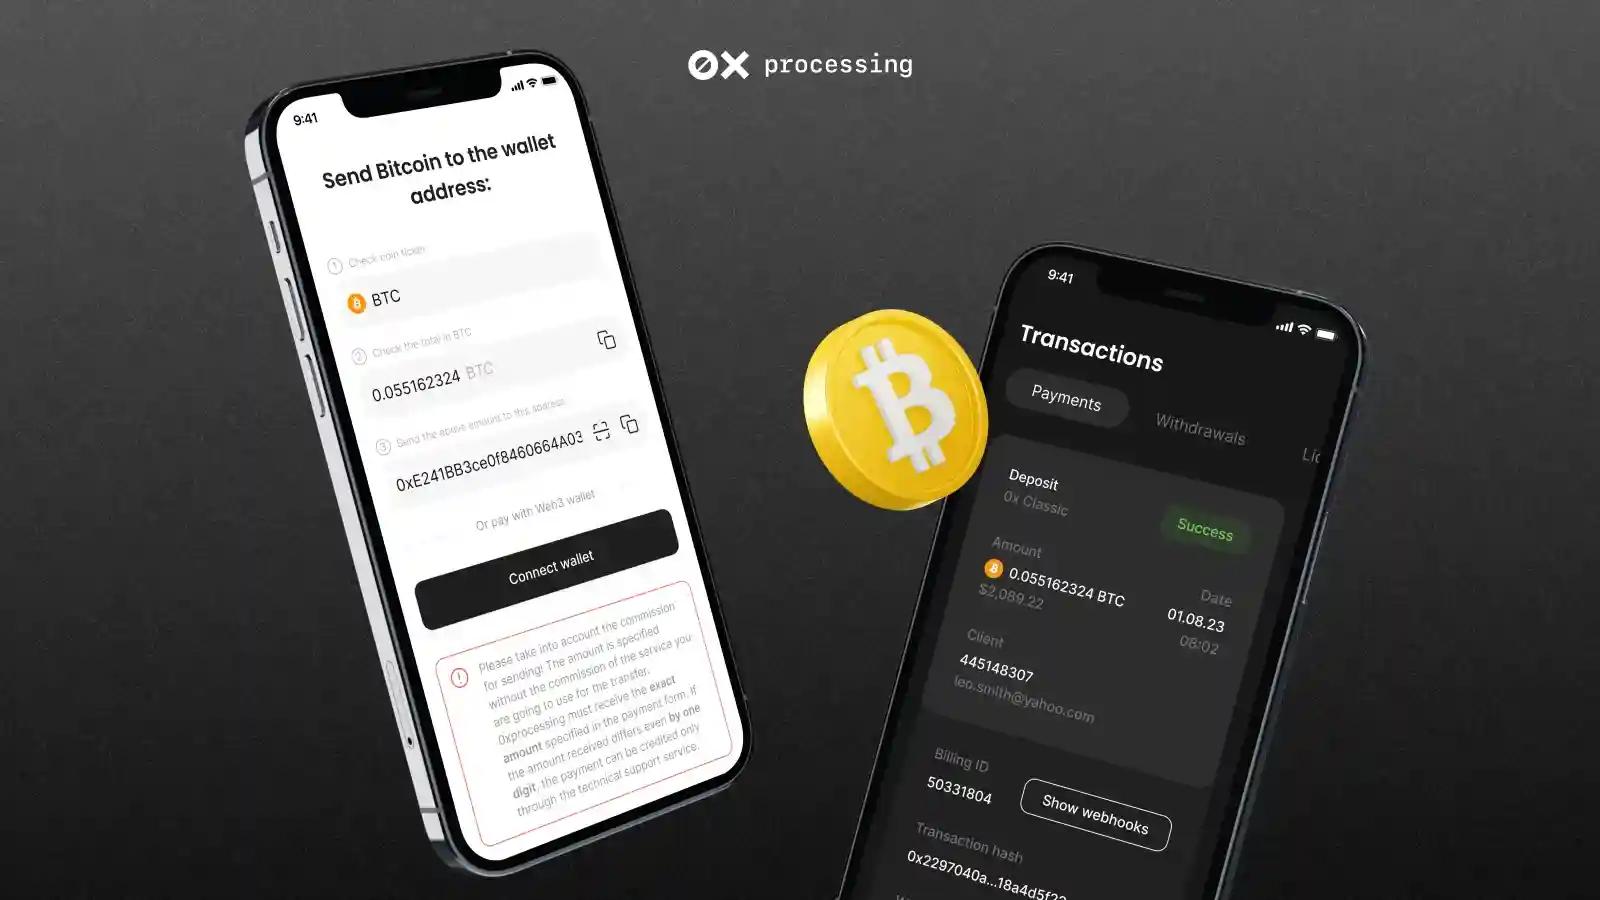 Bitcoin Processing through the 0x Payment Platform